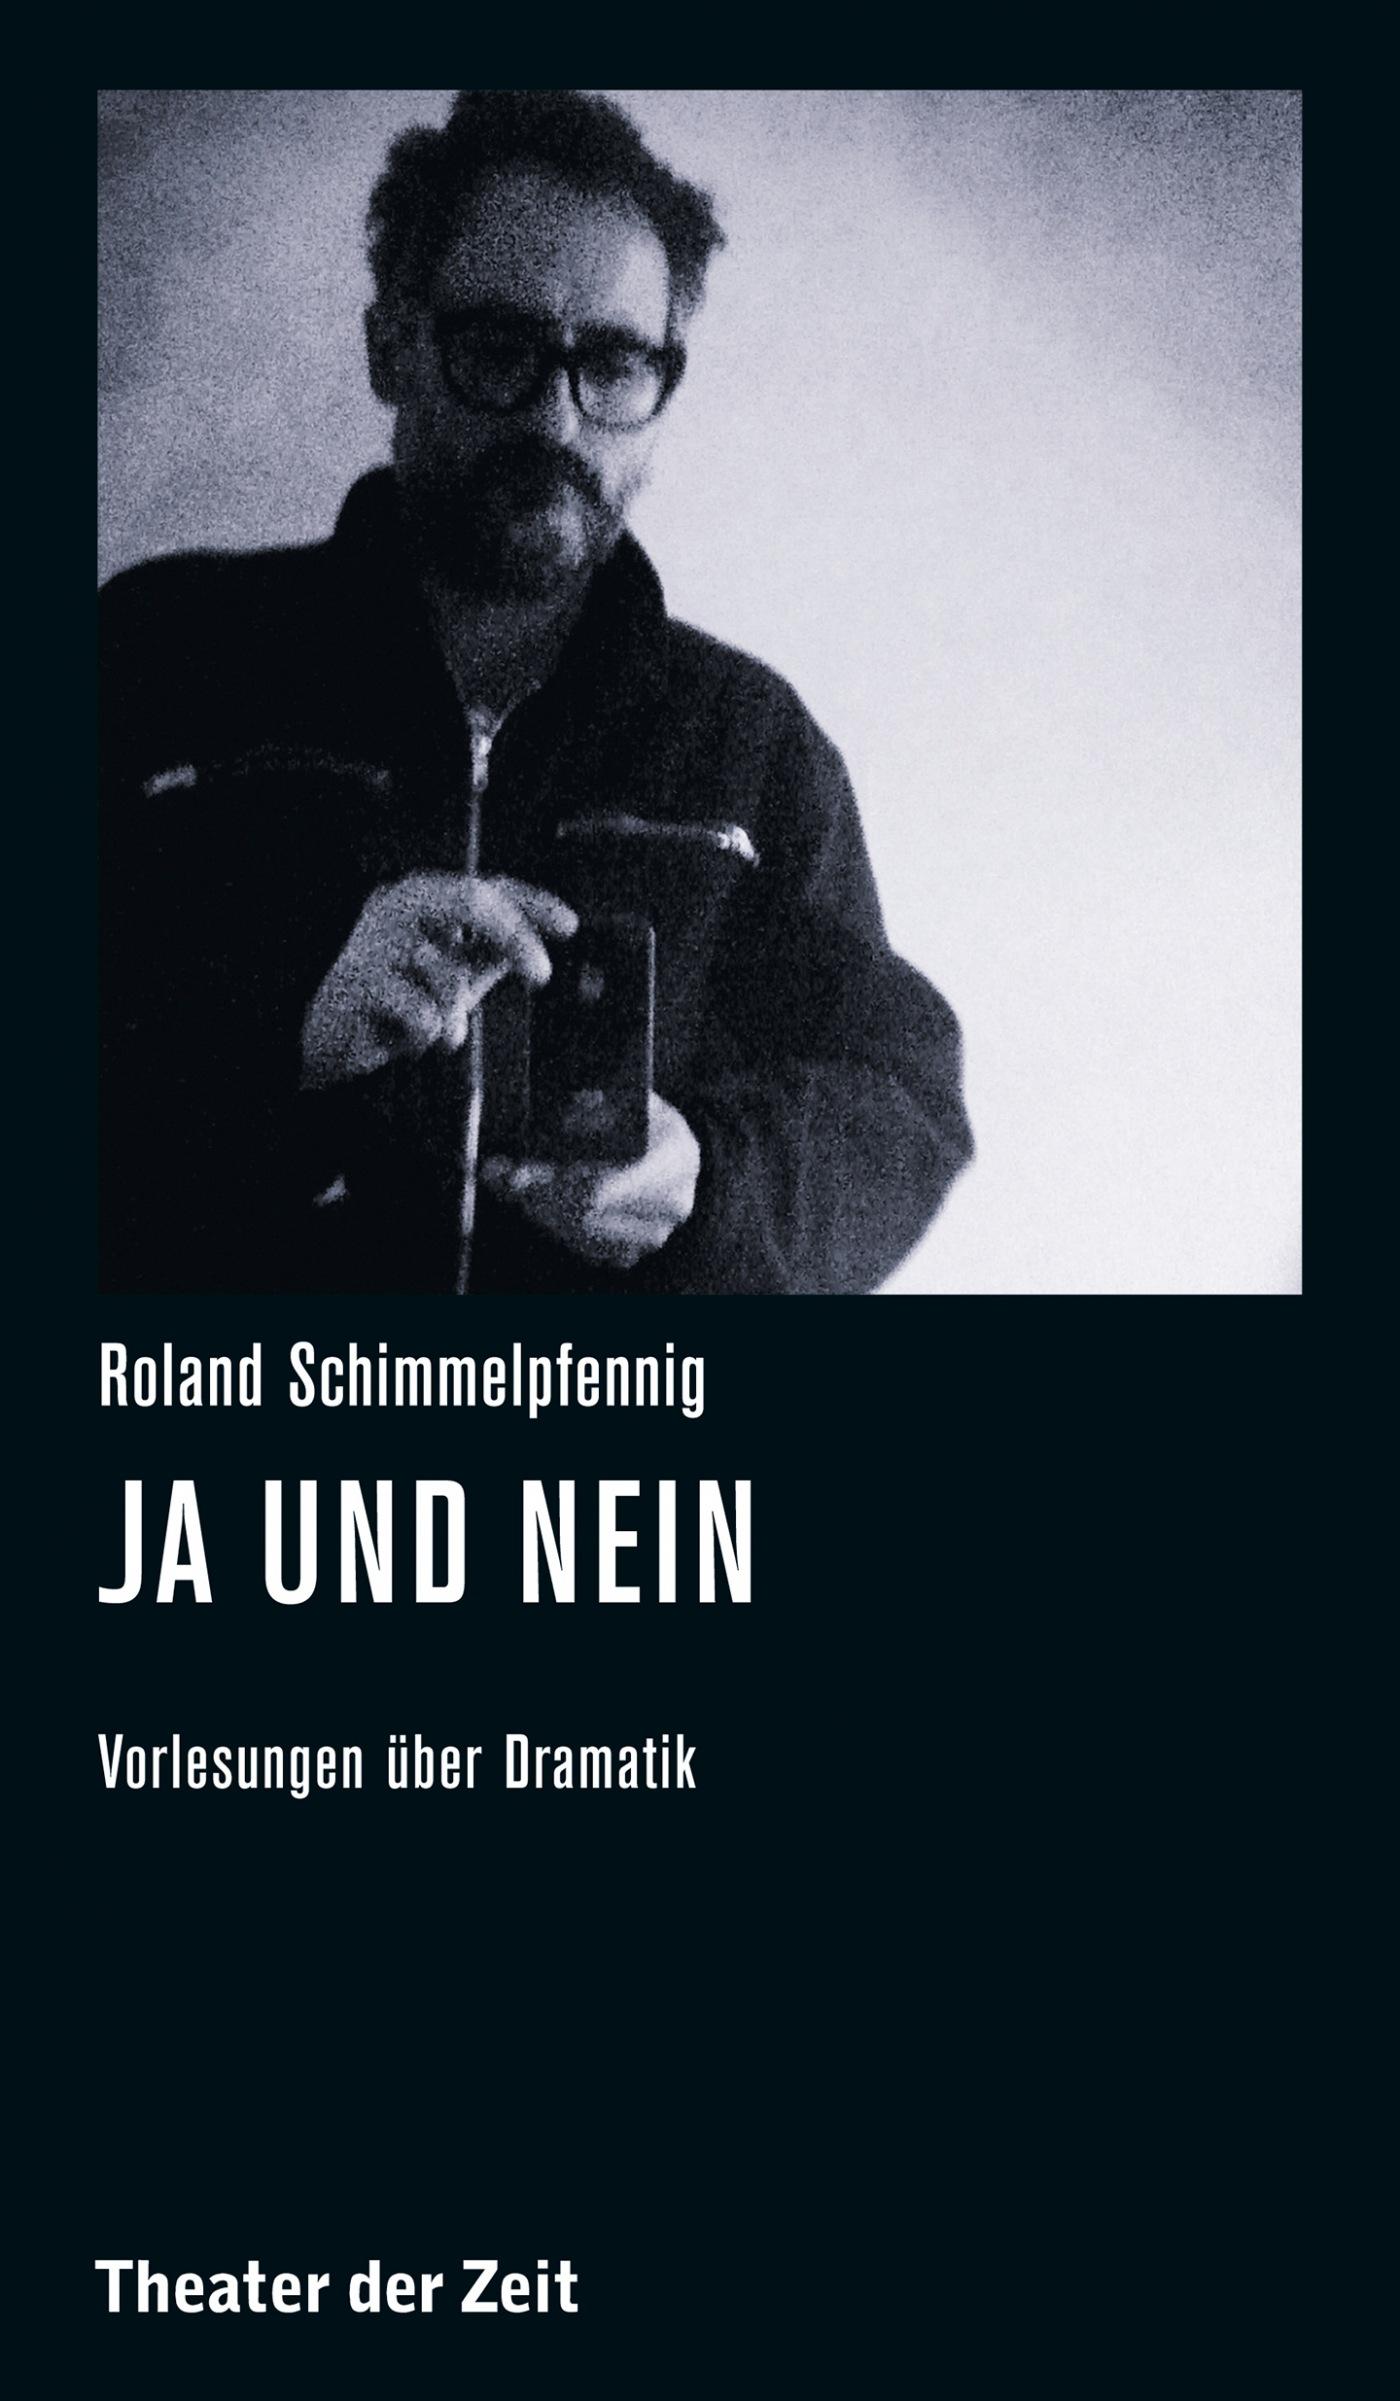 Recherchen 107 "Roland Schimmelpfennig – Ja und Nein/Sí y No"